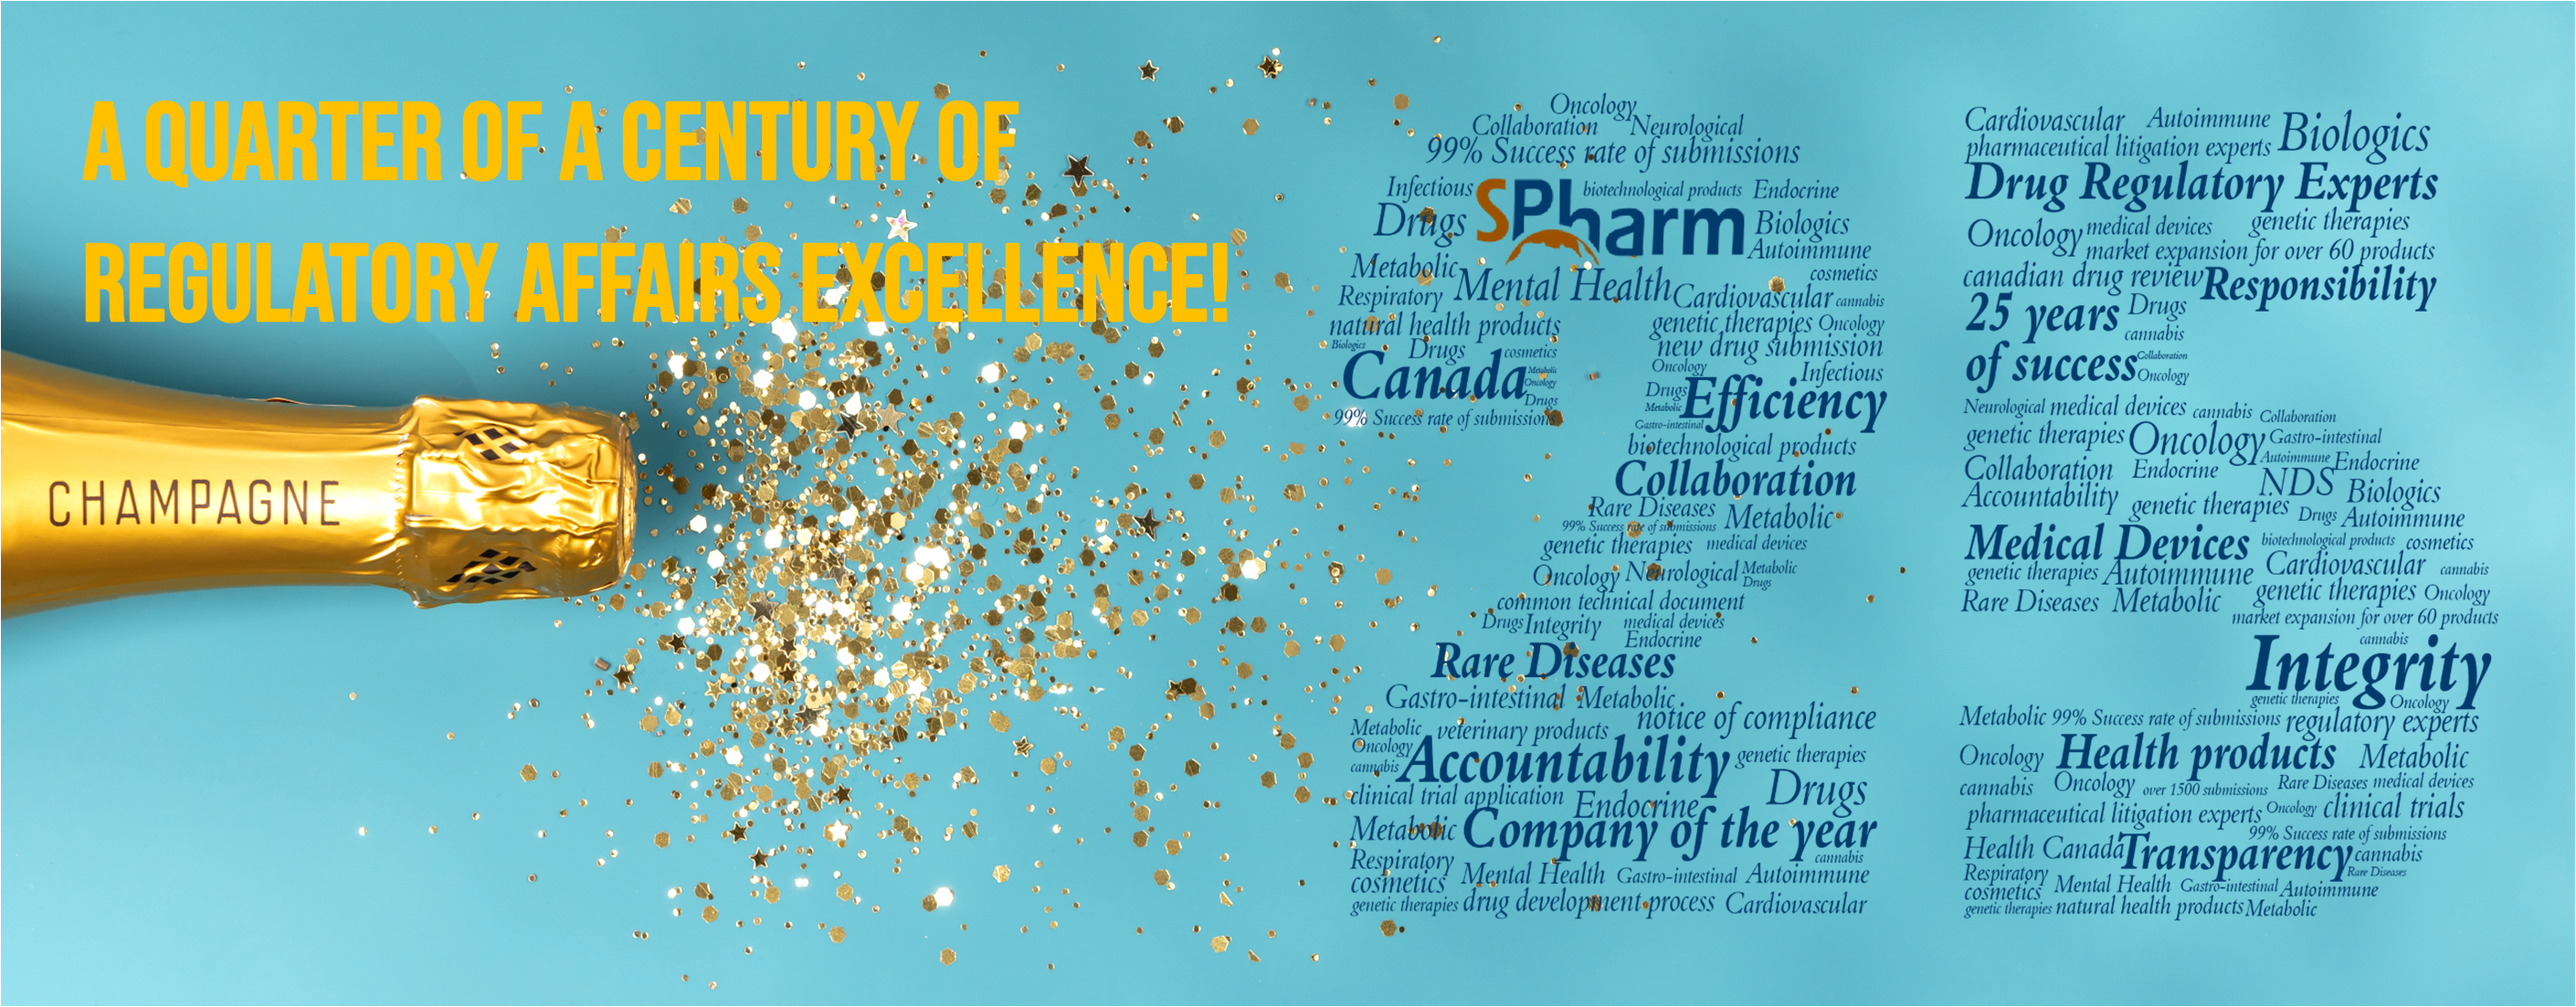 SPHARM celebrates a quarter of a century of regulatory affairs excellence